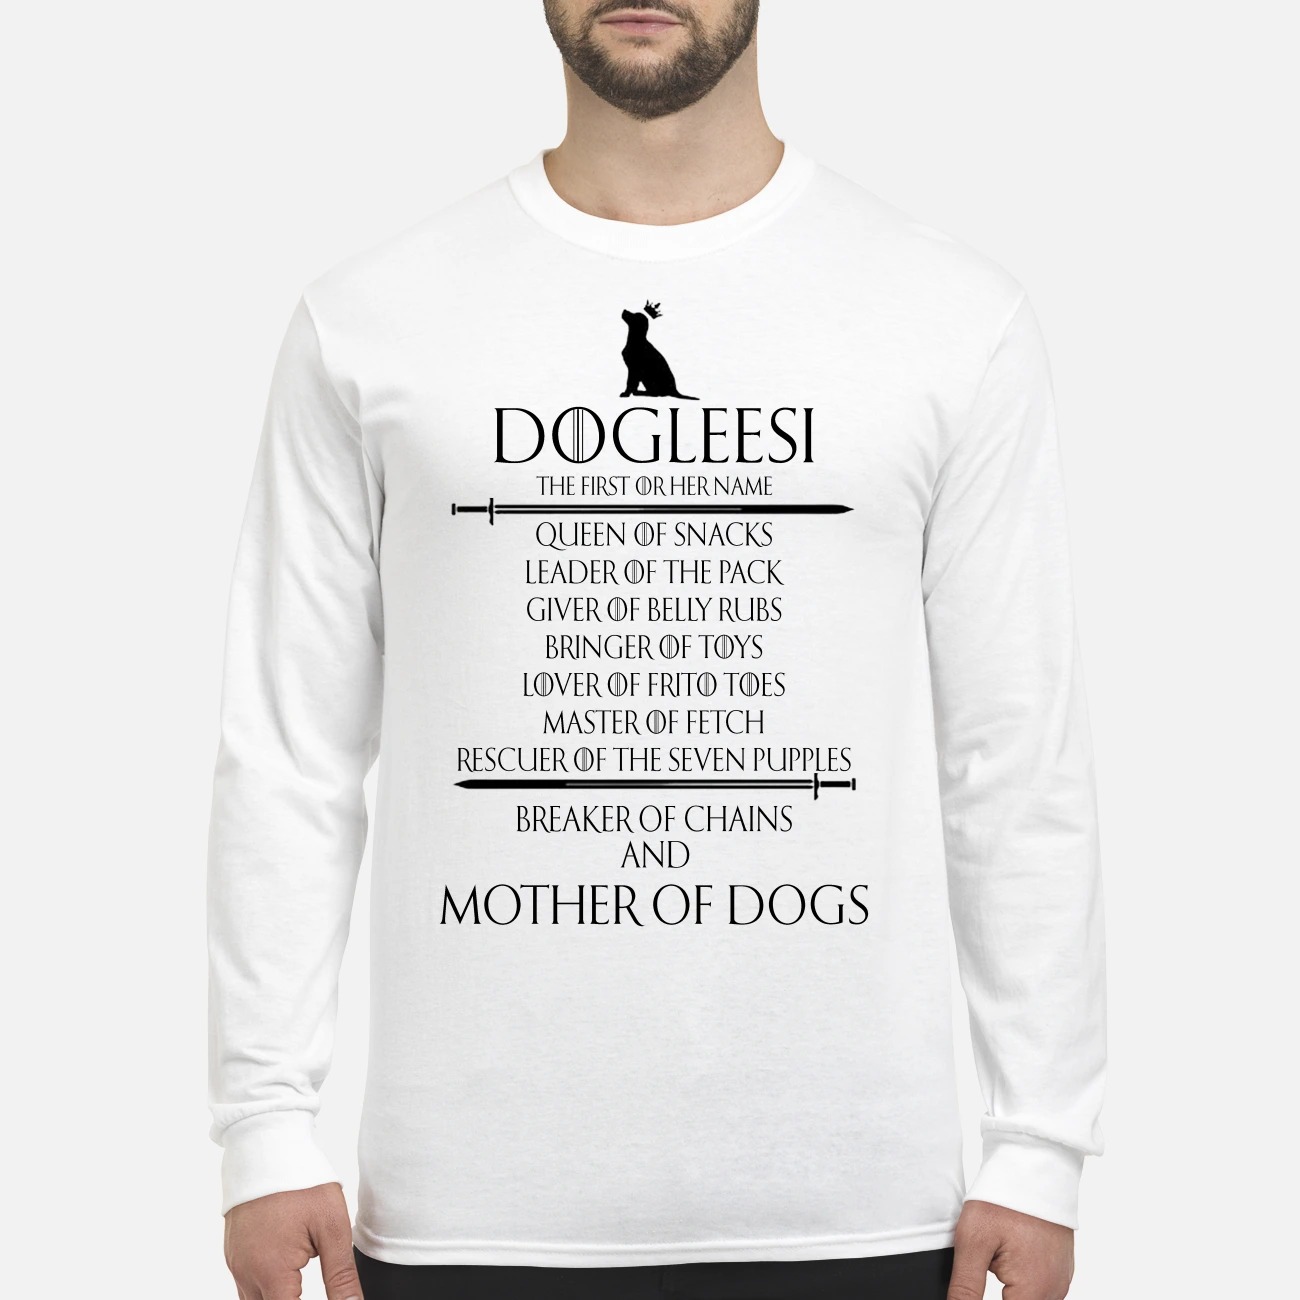 Dogleesi mother of dogs men's long sleeved shirt